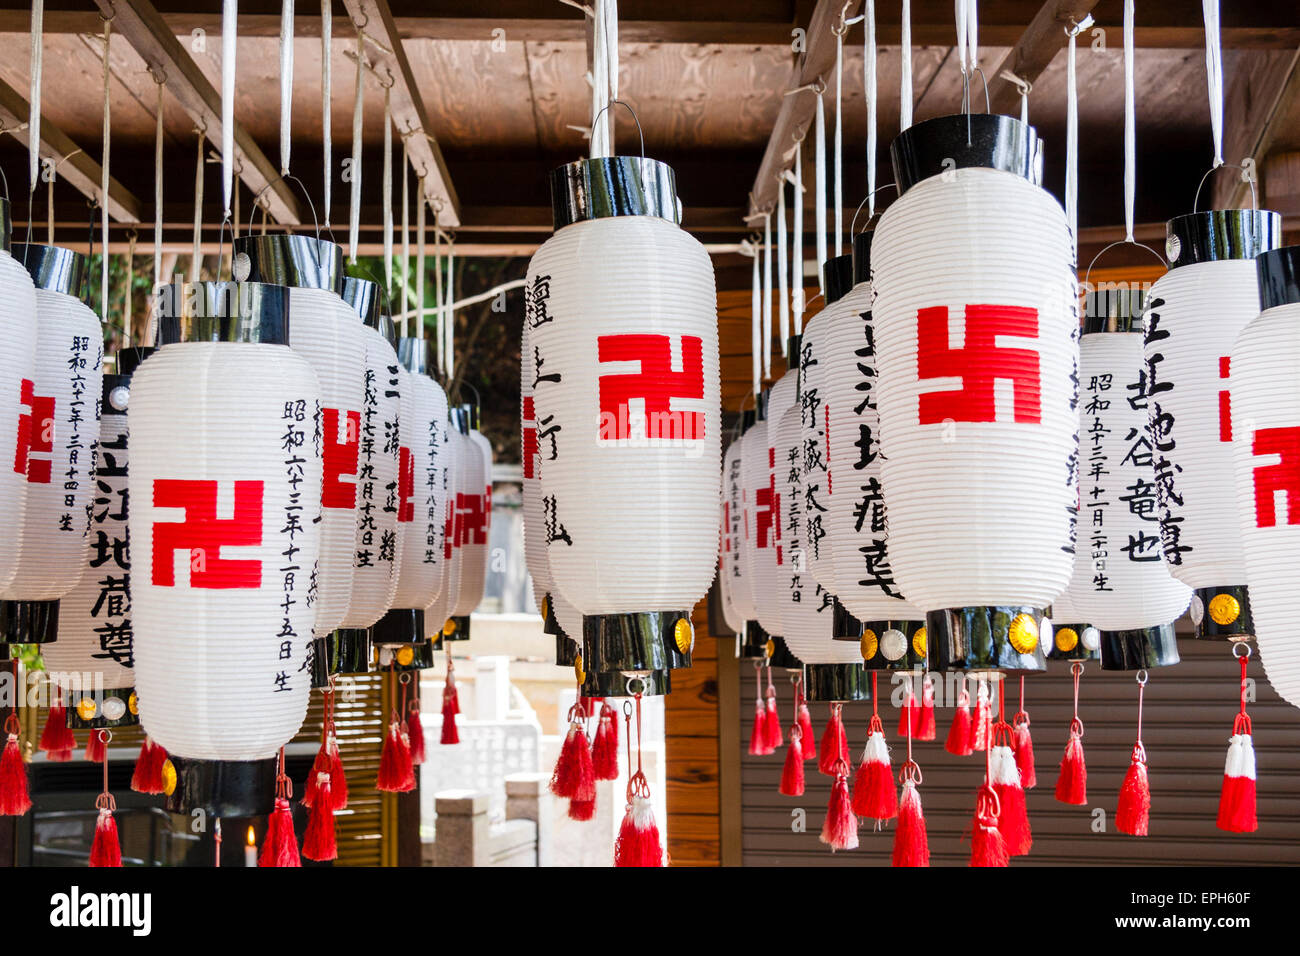 Tableau de lanternes en papier, chois, tous suspendus avec des inscriptions kanji noires et des symboles de paix swastika rouges sur le temple de Suma Dera, Japon. Banque D'Images